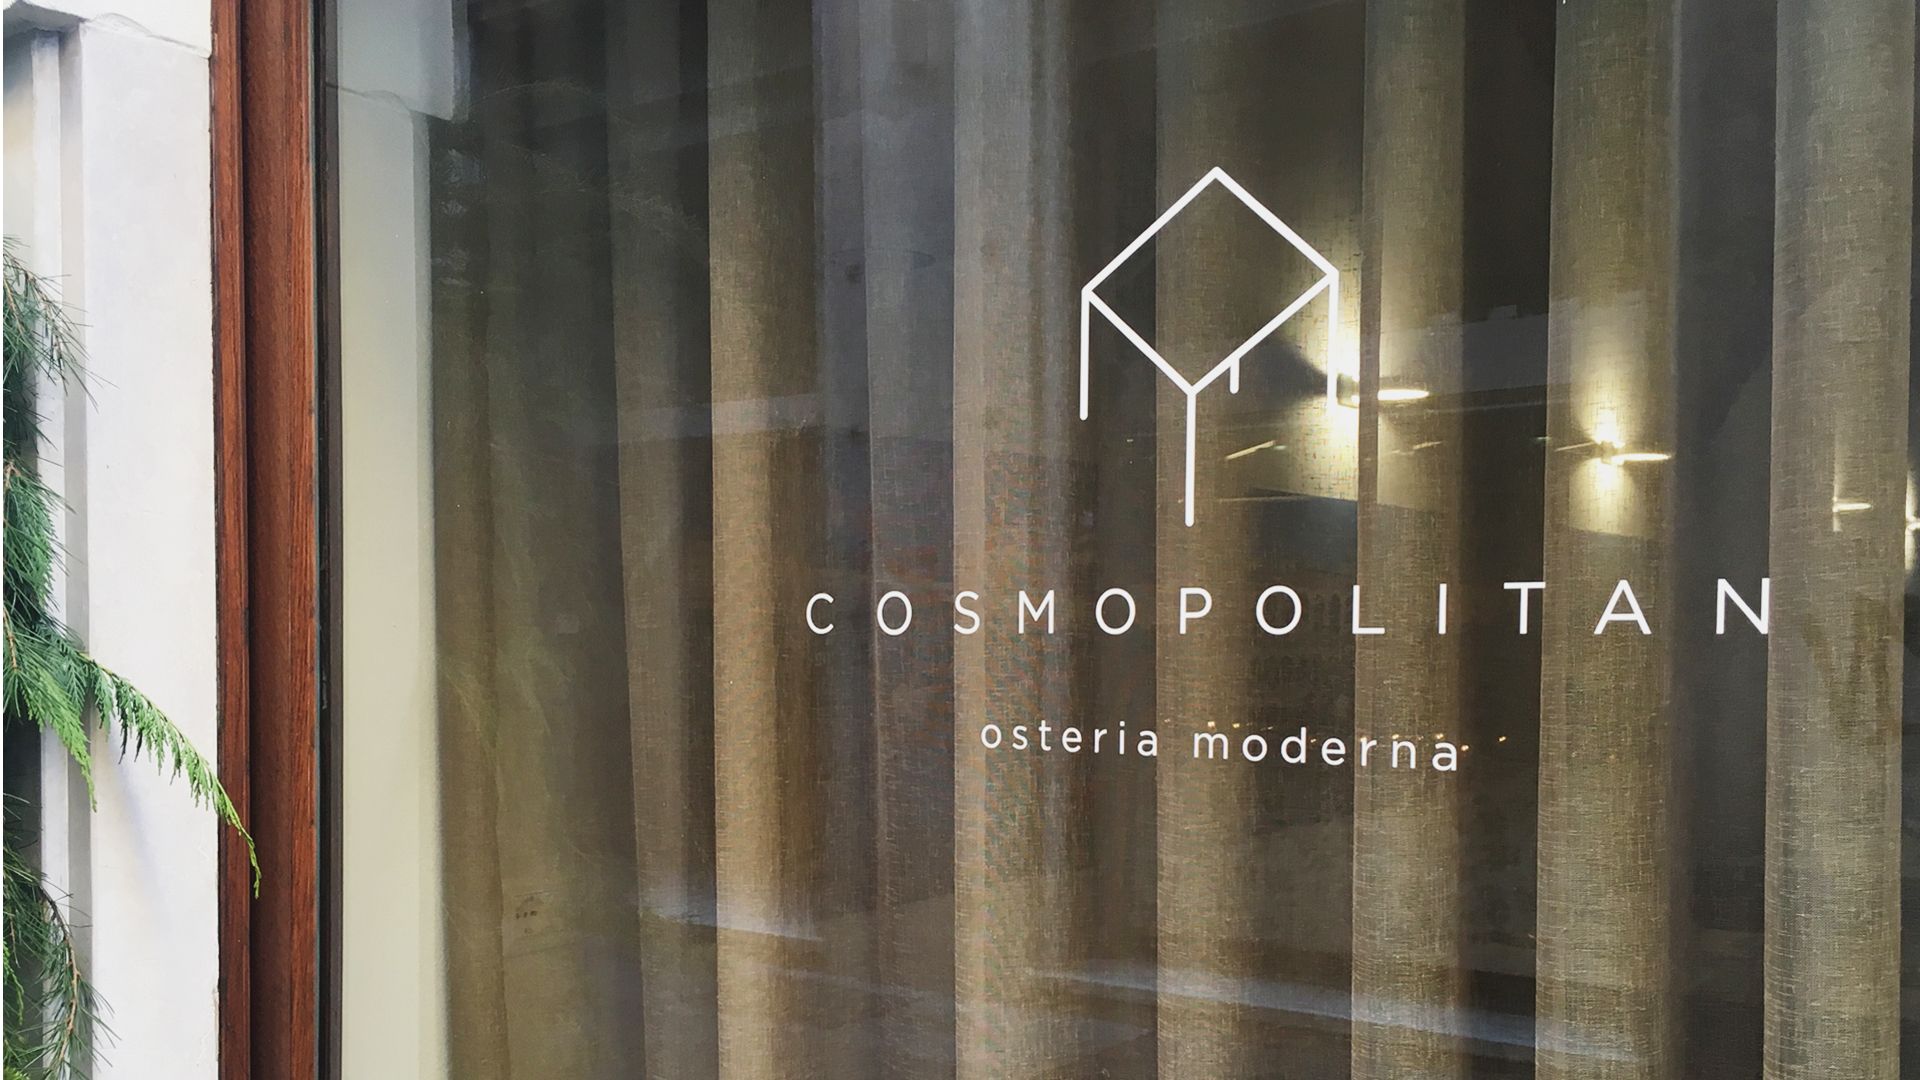 Decorazione delle vetrine del ristorante Cosmopolitan con il logo